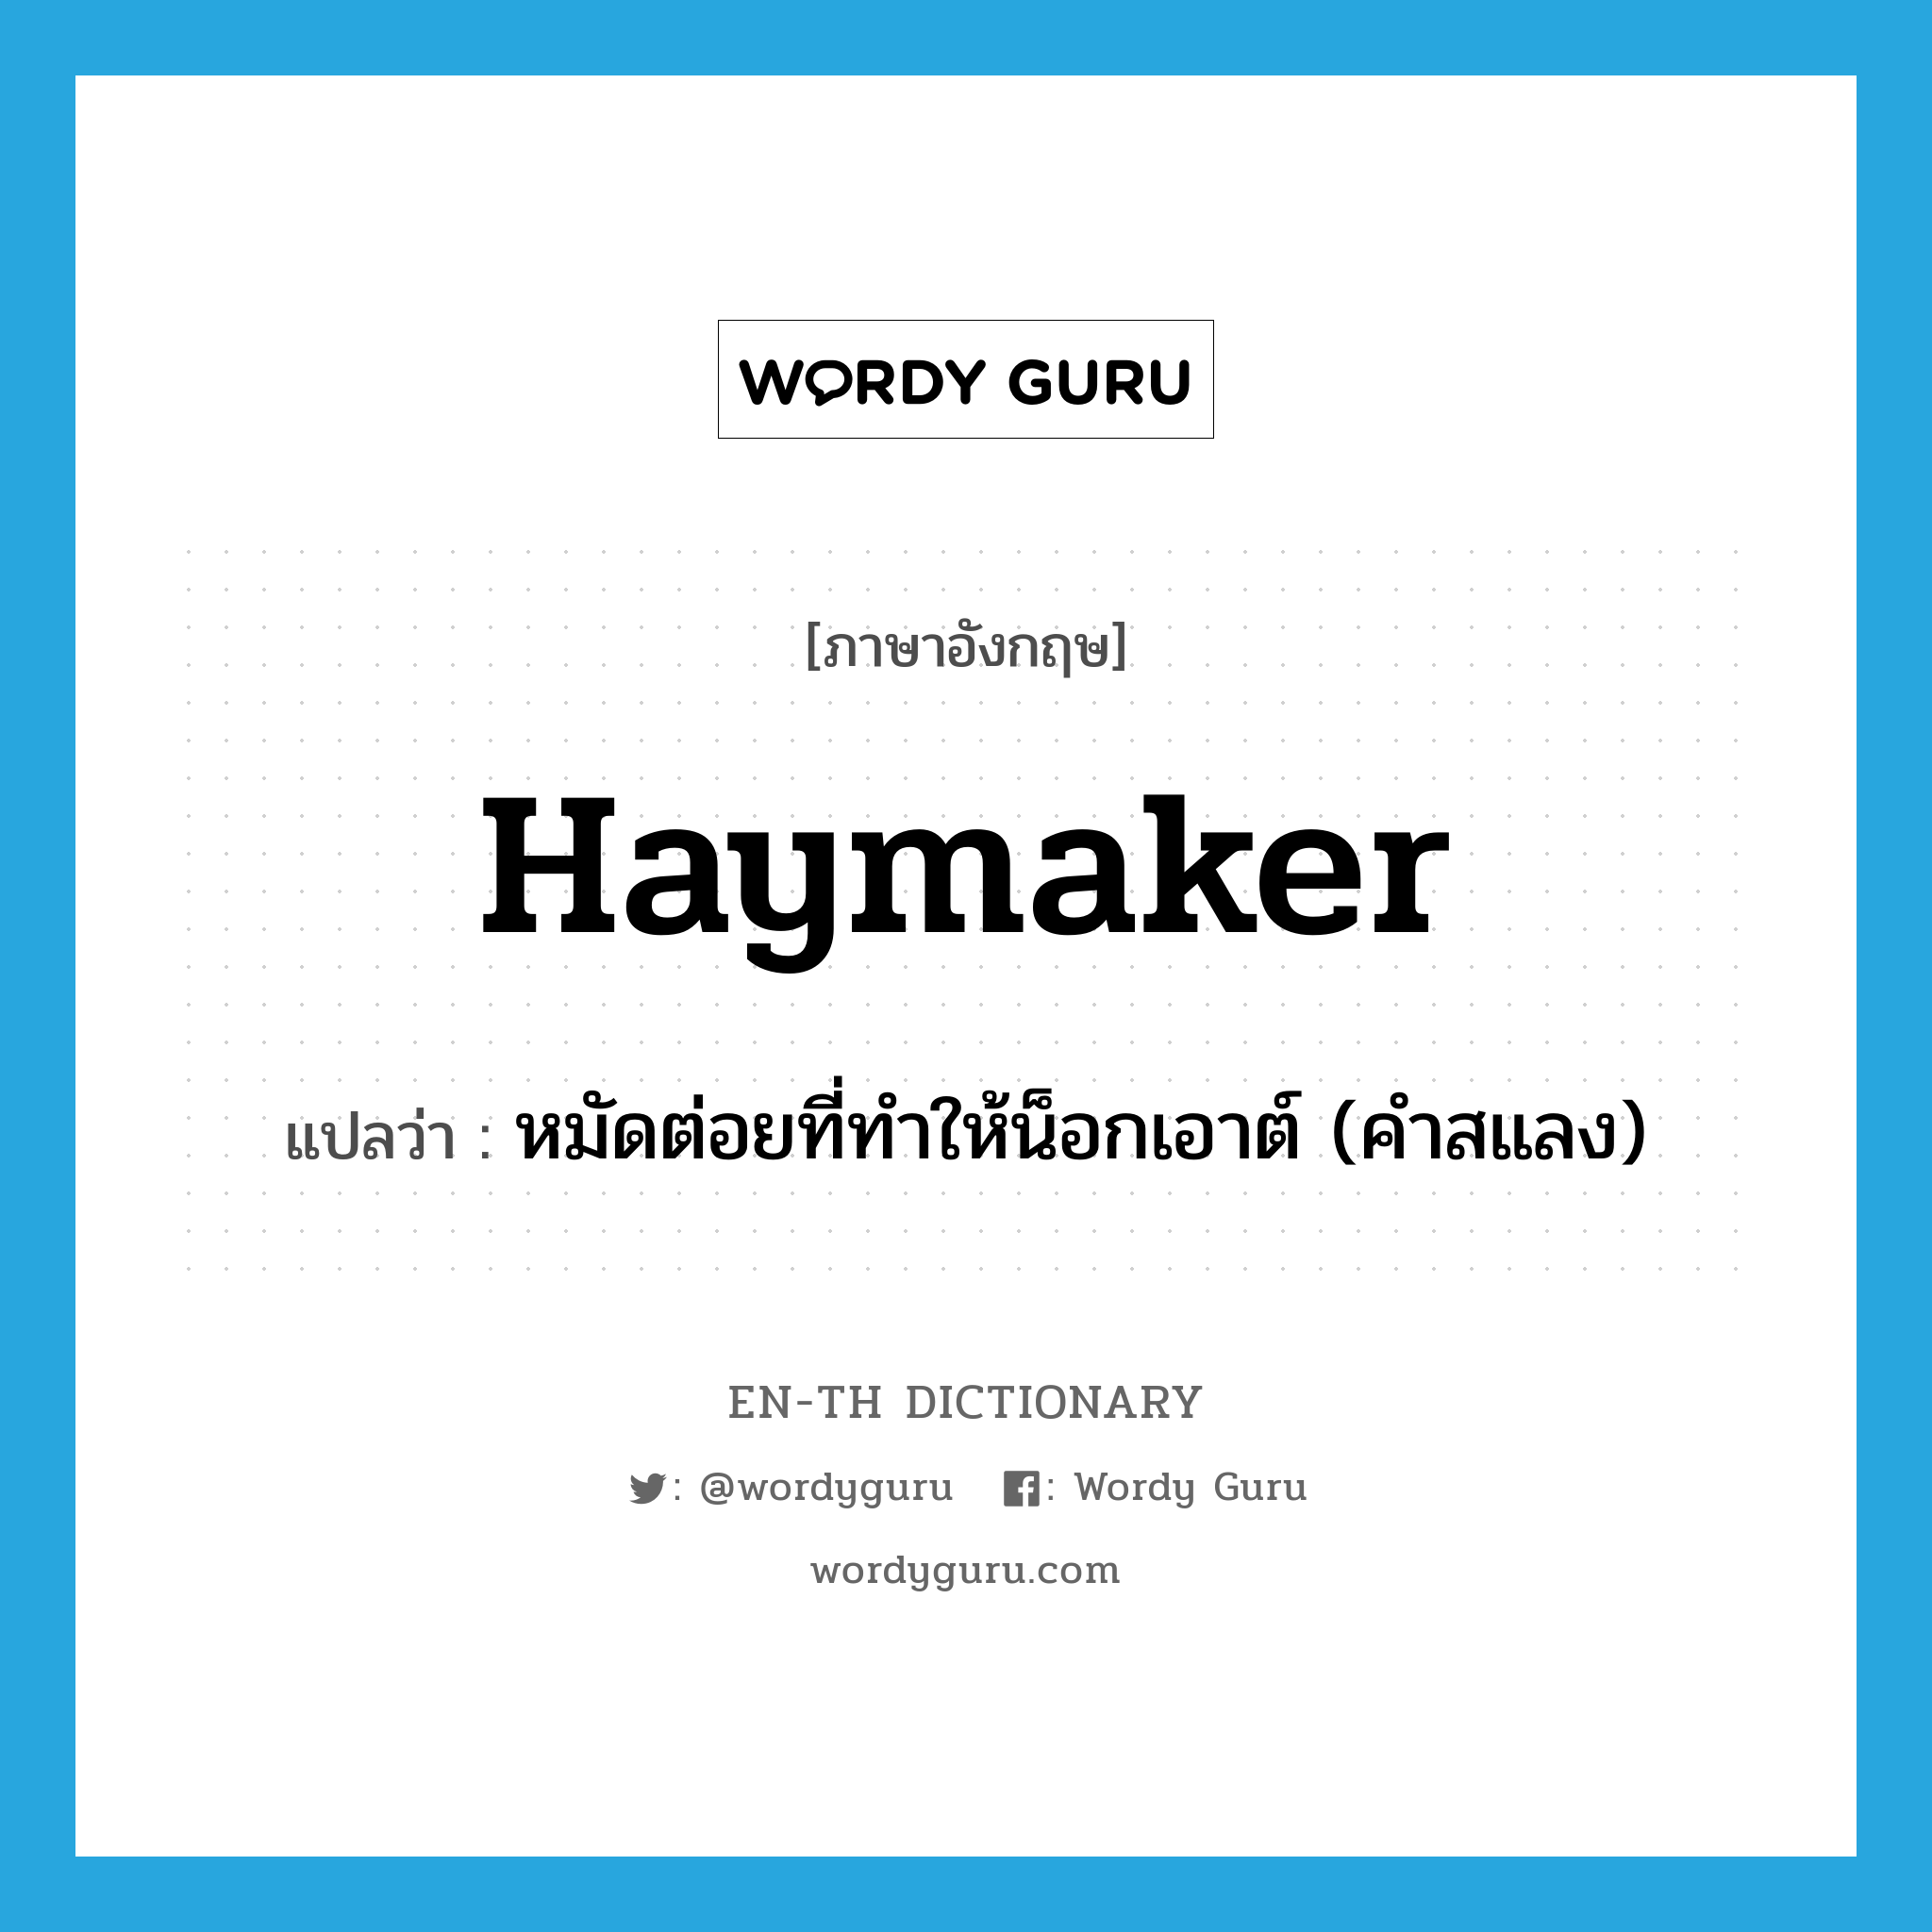 หมัดต่อยที่ทำให้น็อกเอาต์ (คำสแลง) ภาษาอังกฤษ?, คำศัพท์ภาษาอังกฤษ หมัดต่อยที่ทำให้น็อกเอาต์ (คำสแลง) แปลว่า haymaker ประเภท N หมวด N